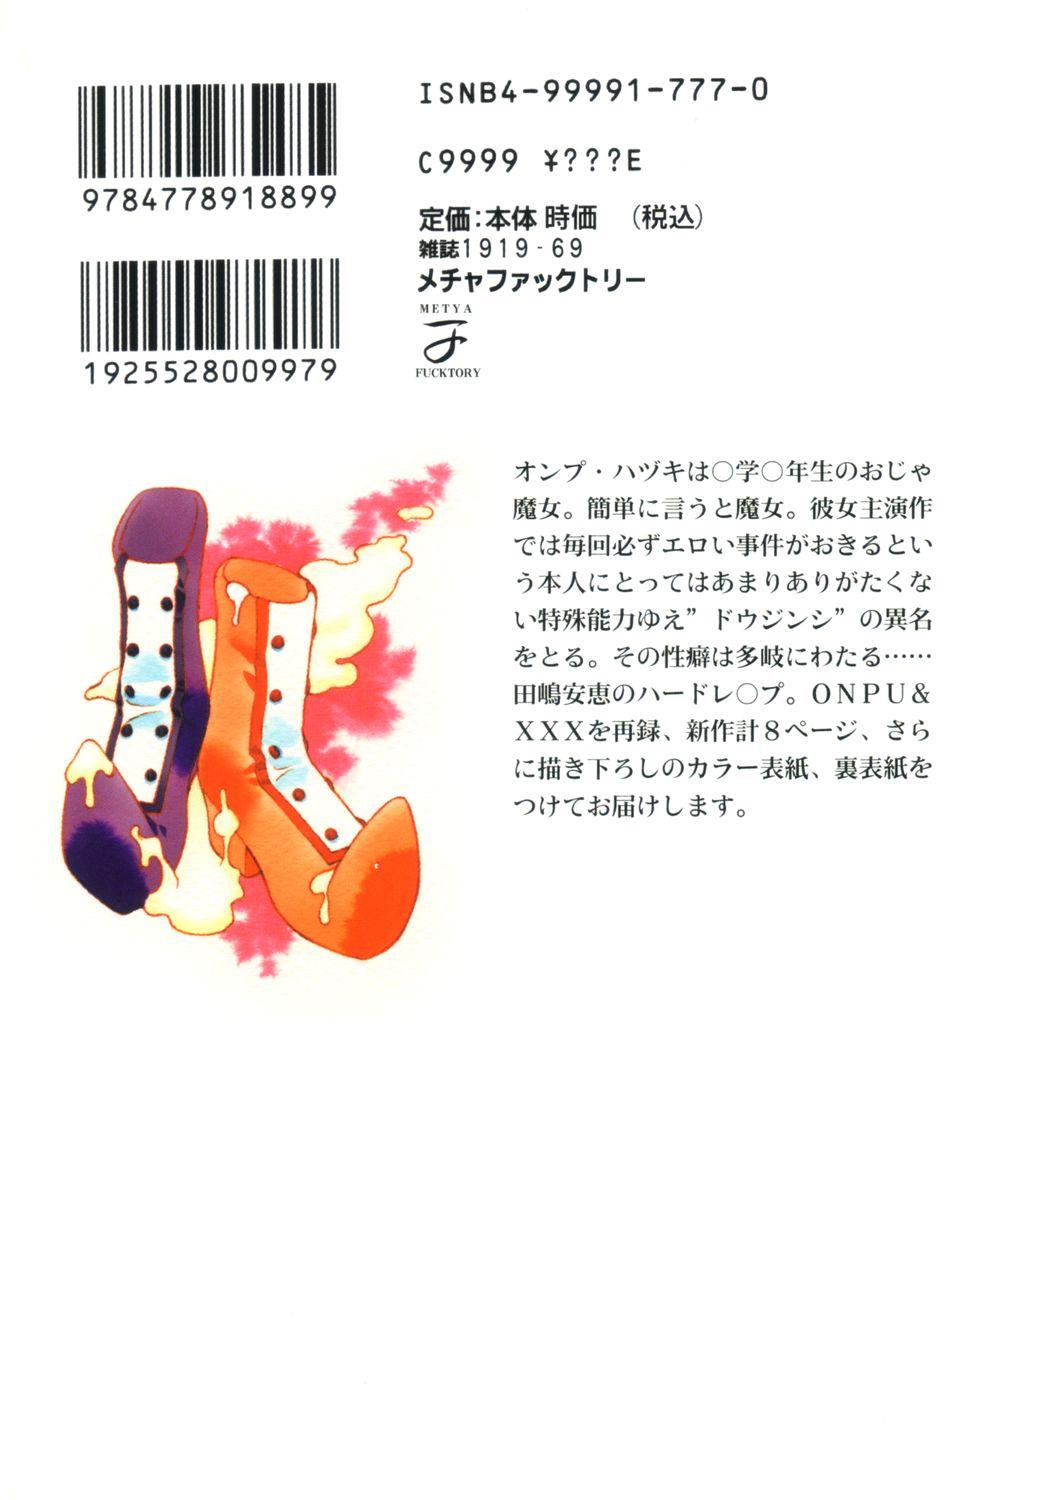 Bus Onpu Hazuki ni Dokkan - Ojamajo doremi Girlfriends - Page 18